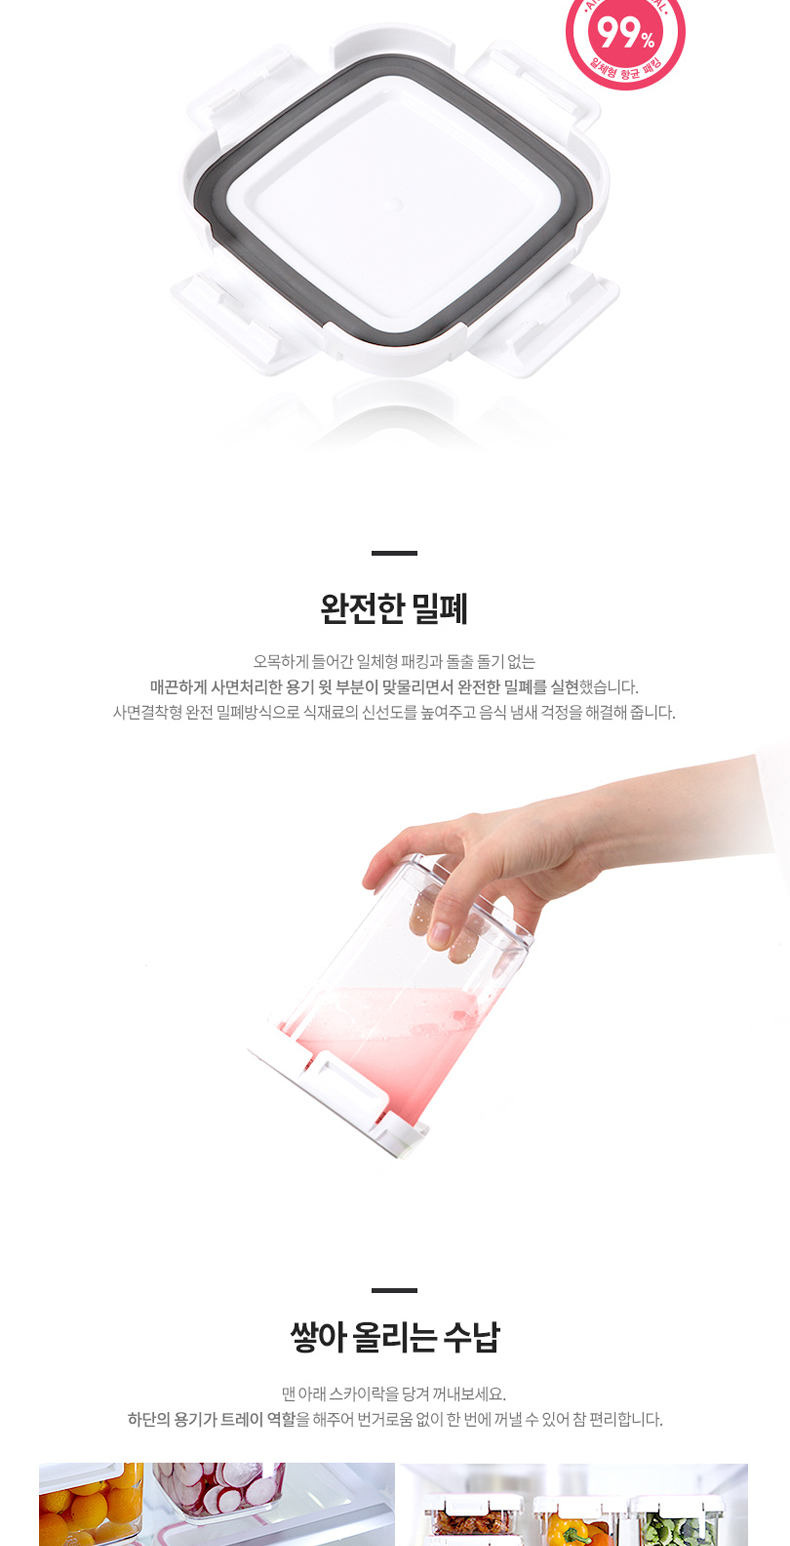 ChangSin韩国进口塑料密封保鲜盒食物收纳杂粮储物盒185ml